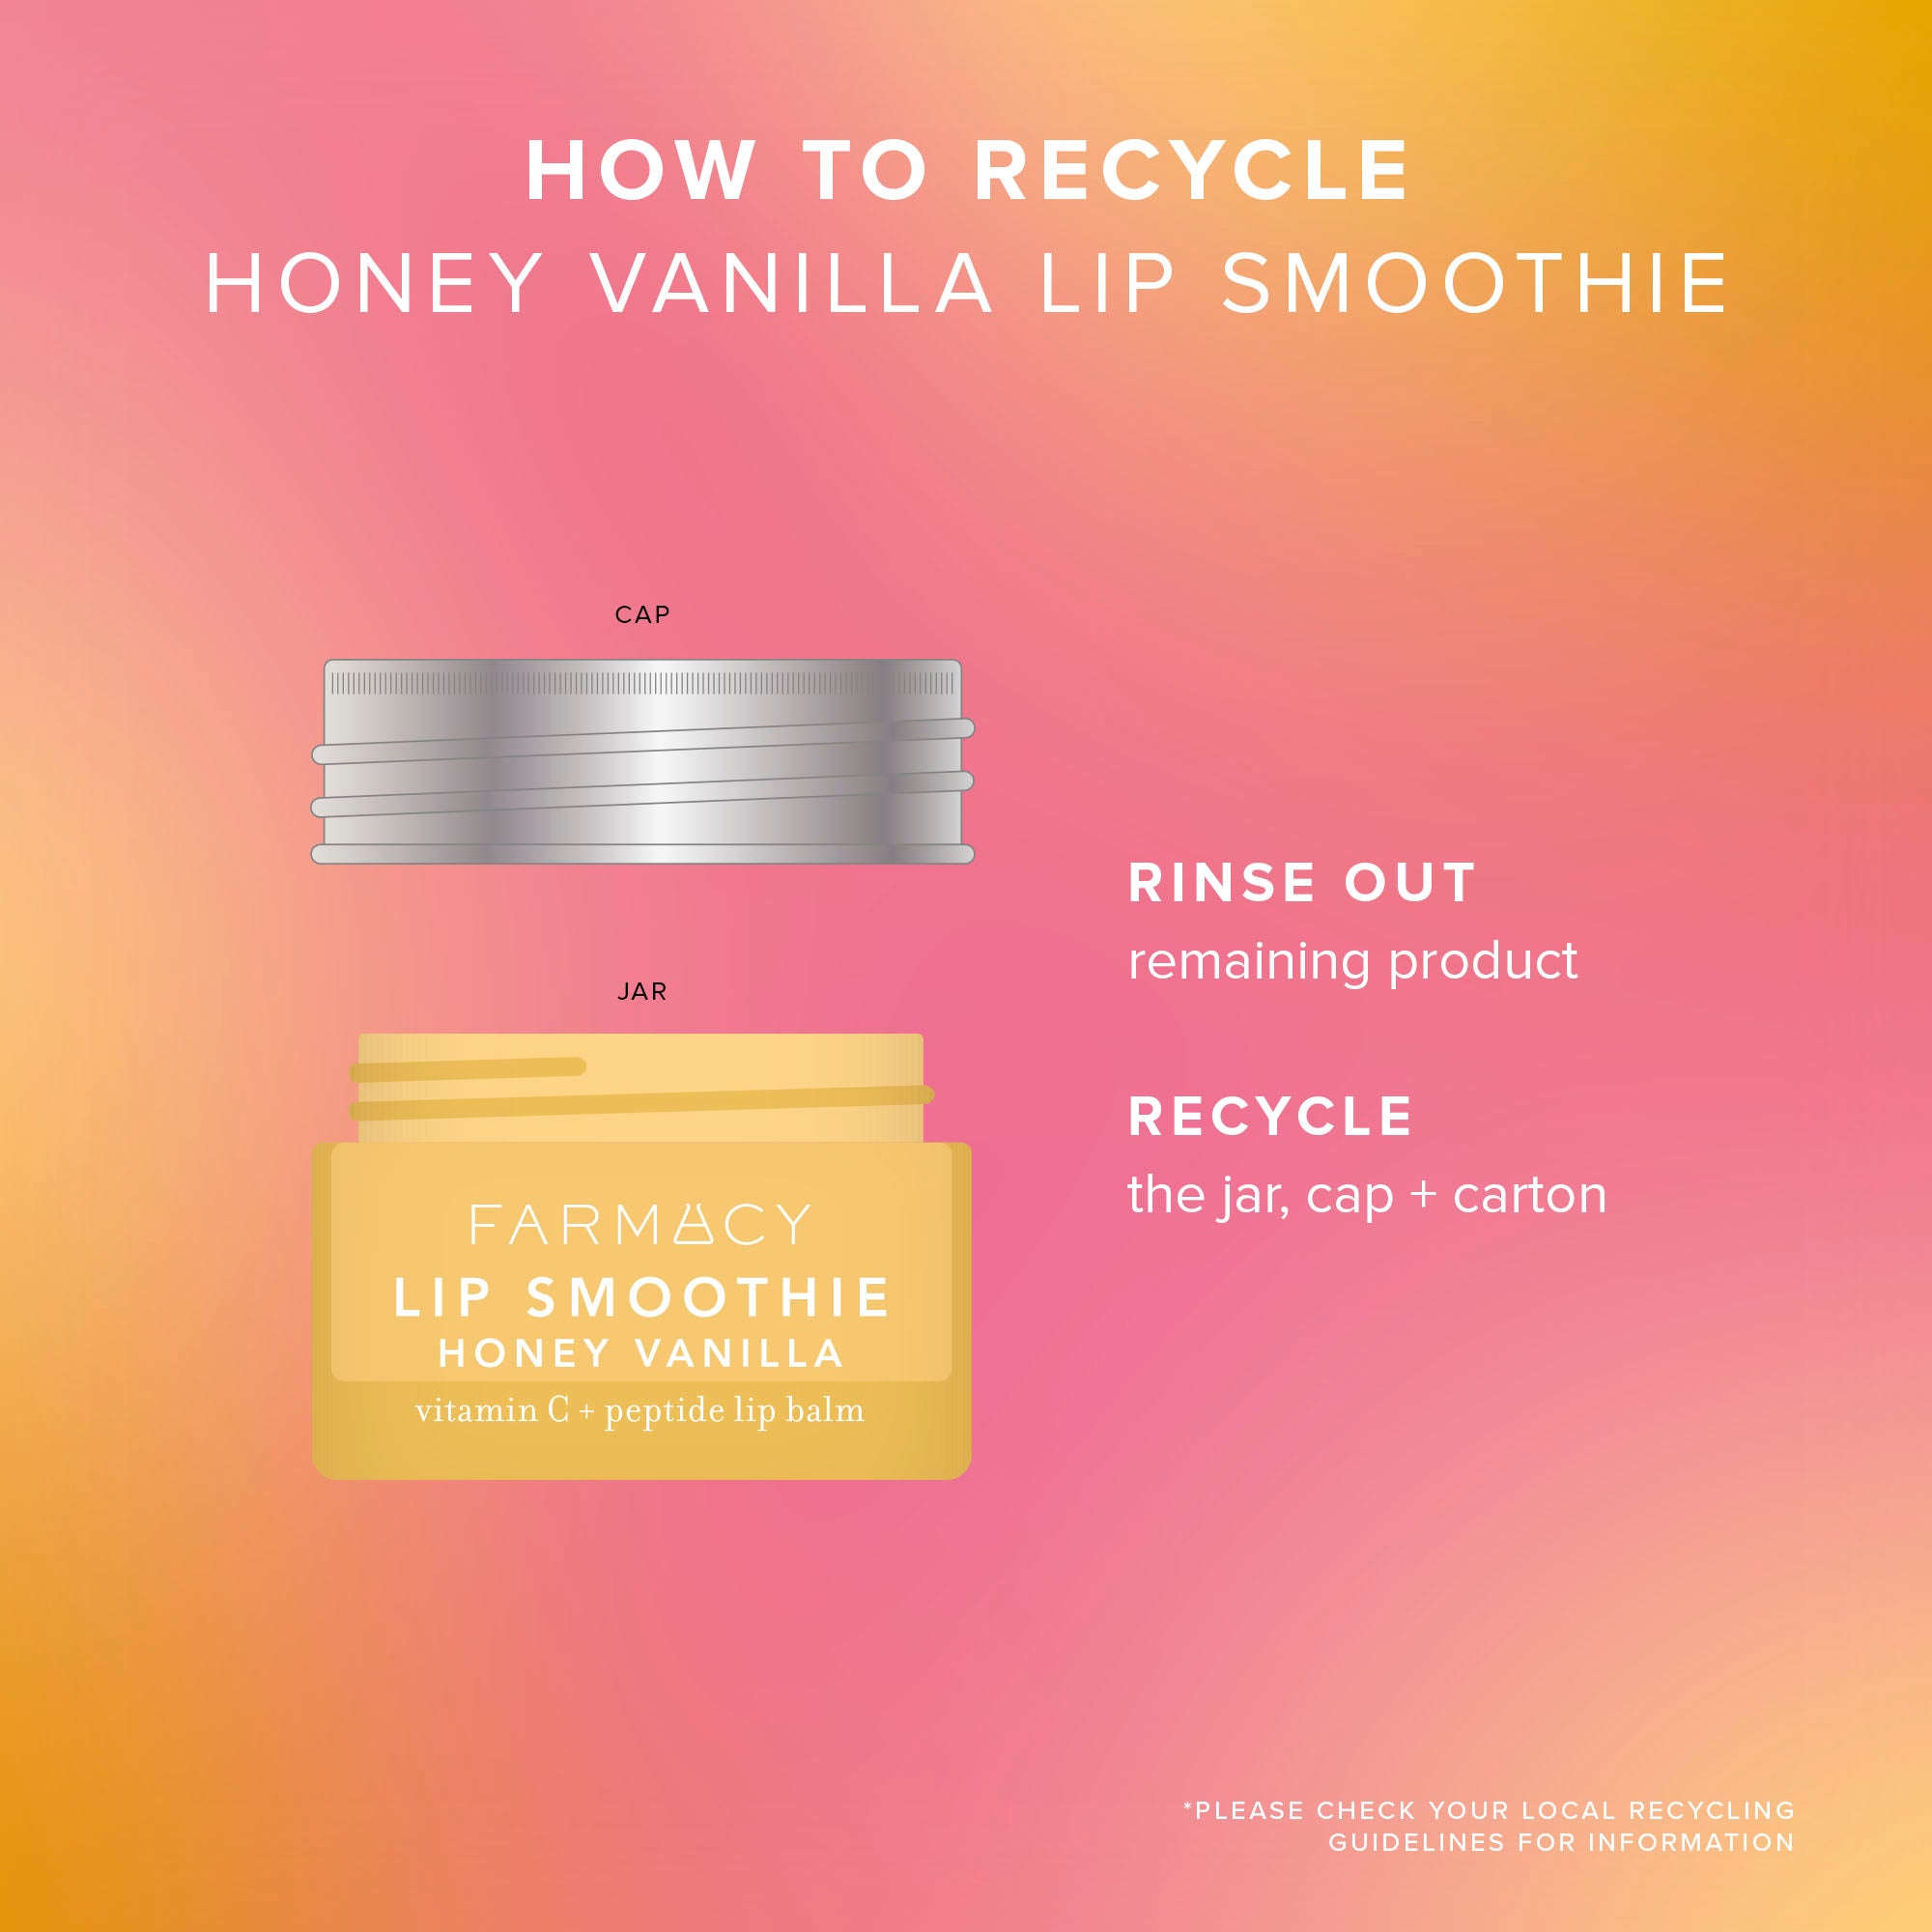 How To Recycle Honey Vanilla Lip Smoothie